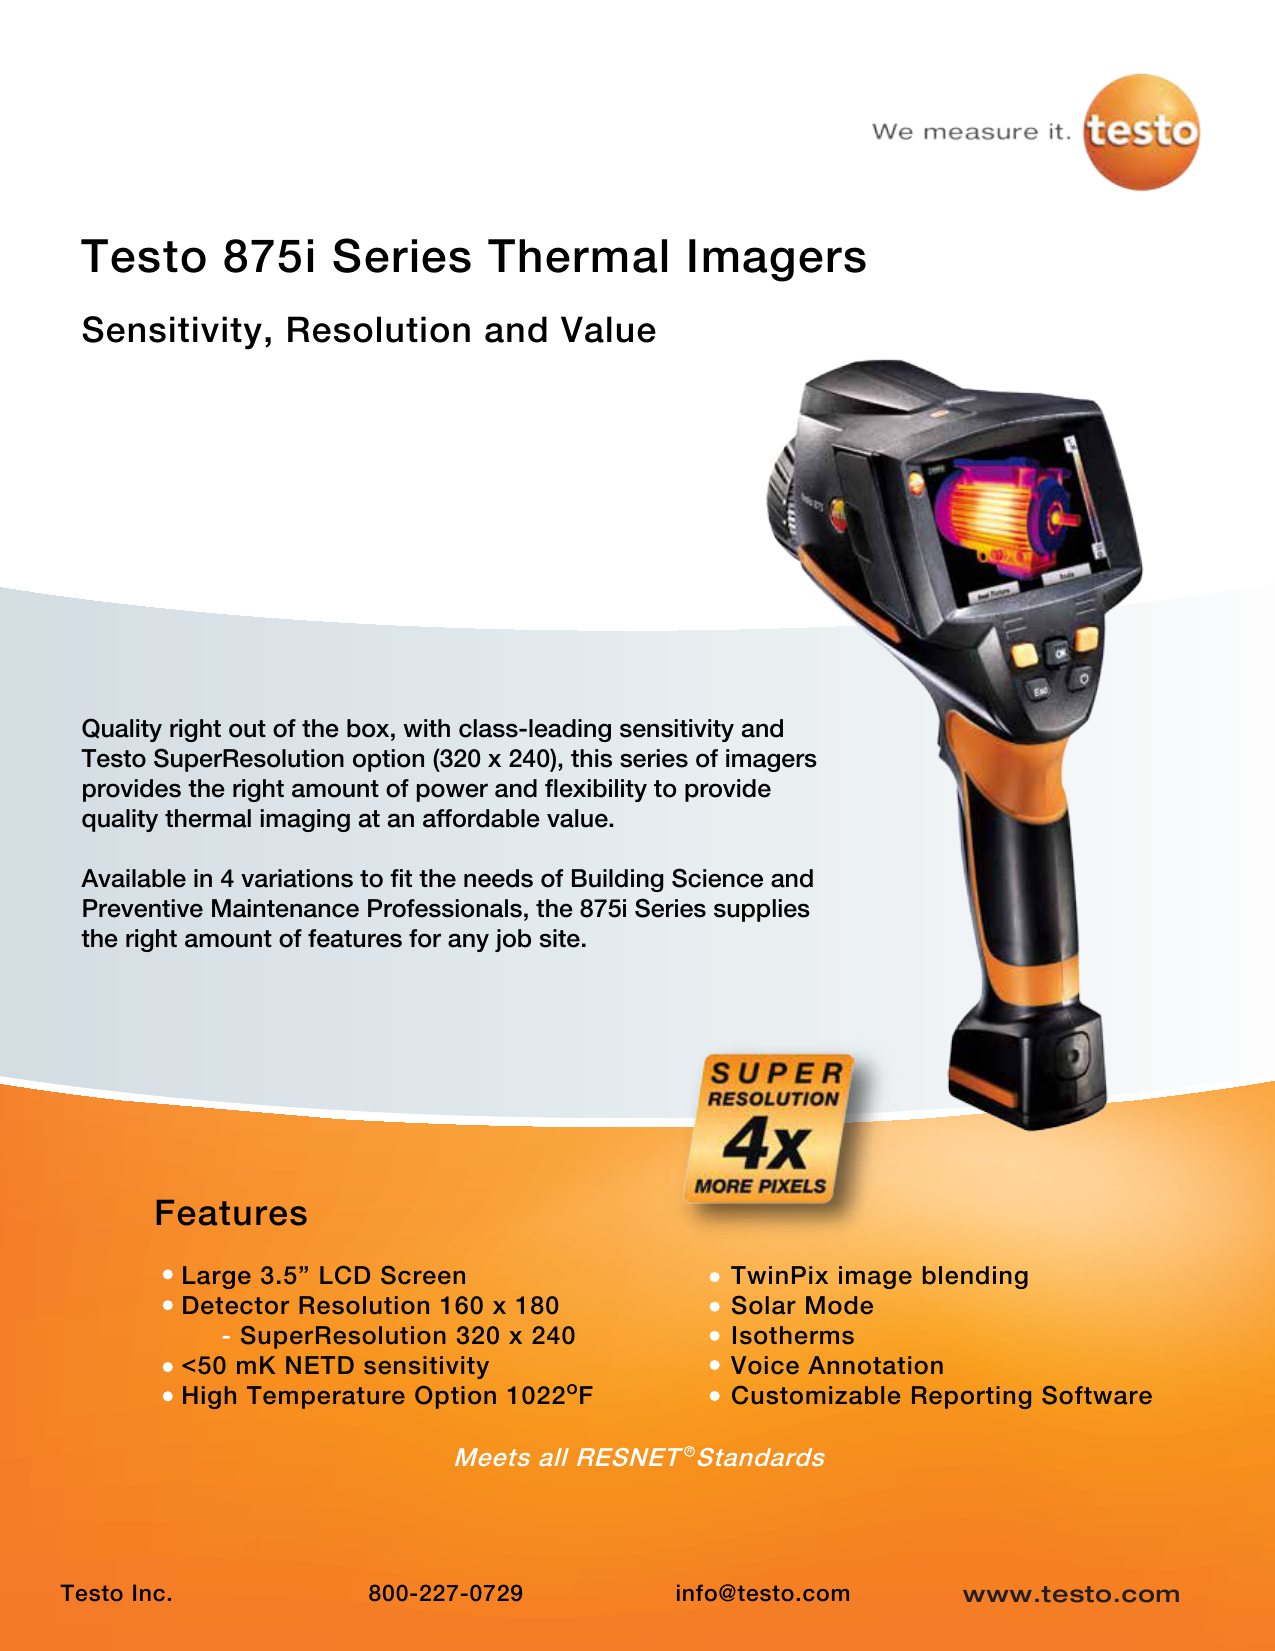 Testo-875i Series กล้องถ่ายภาพความร้อน / ราคา 